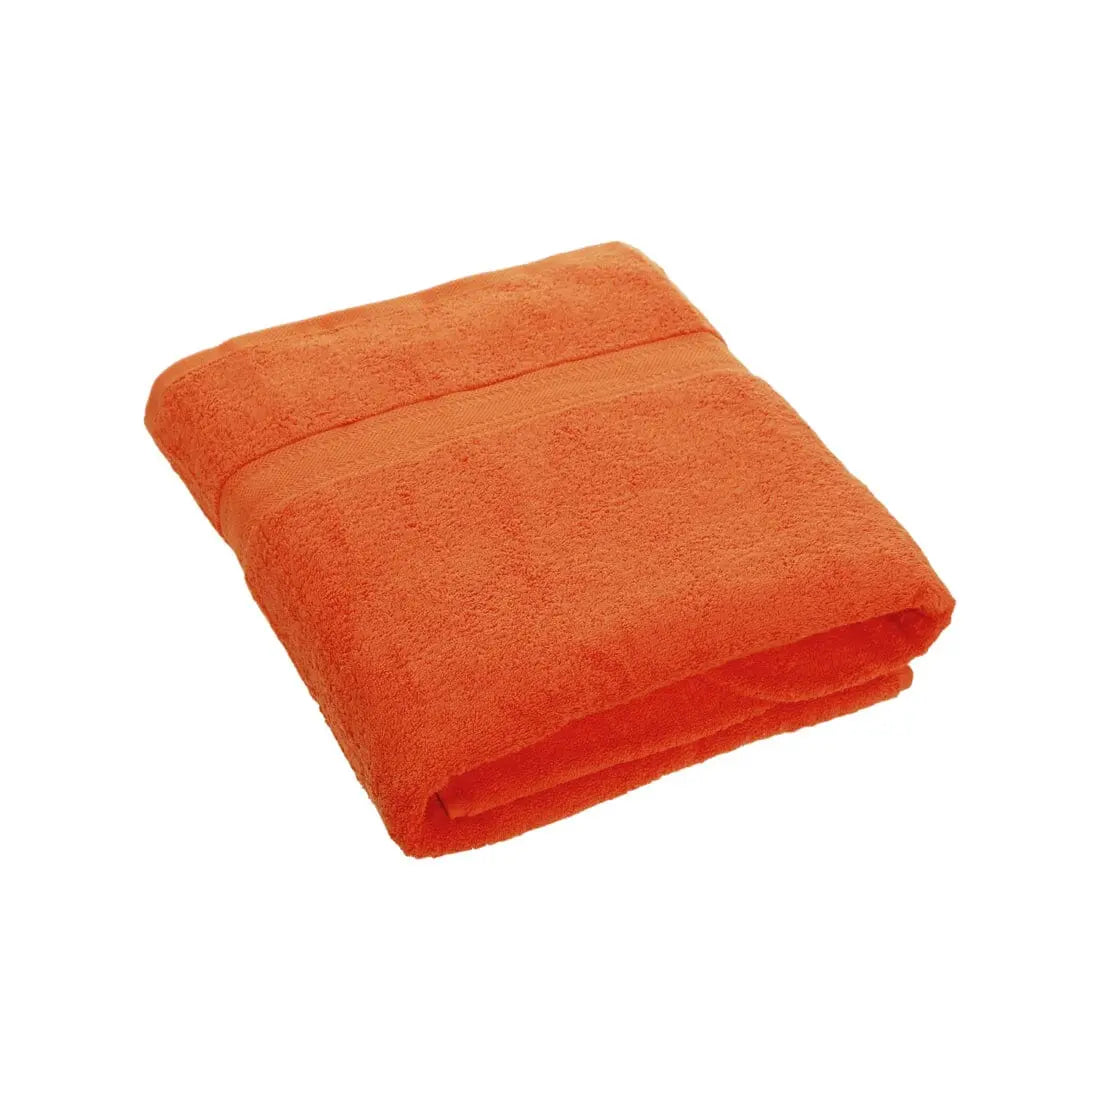 vibrant orange towel